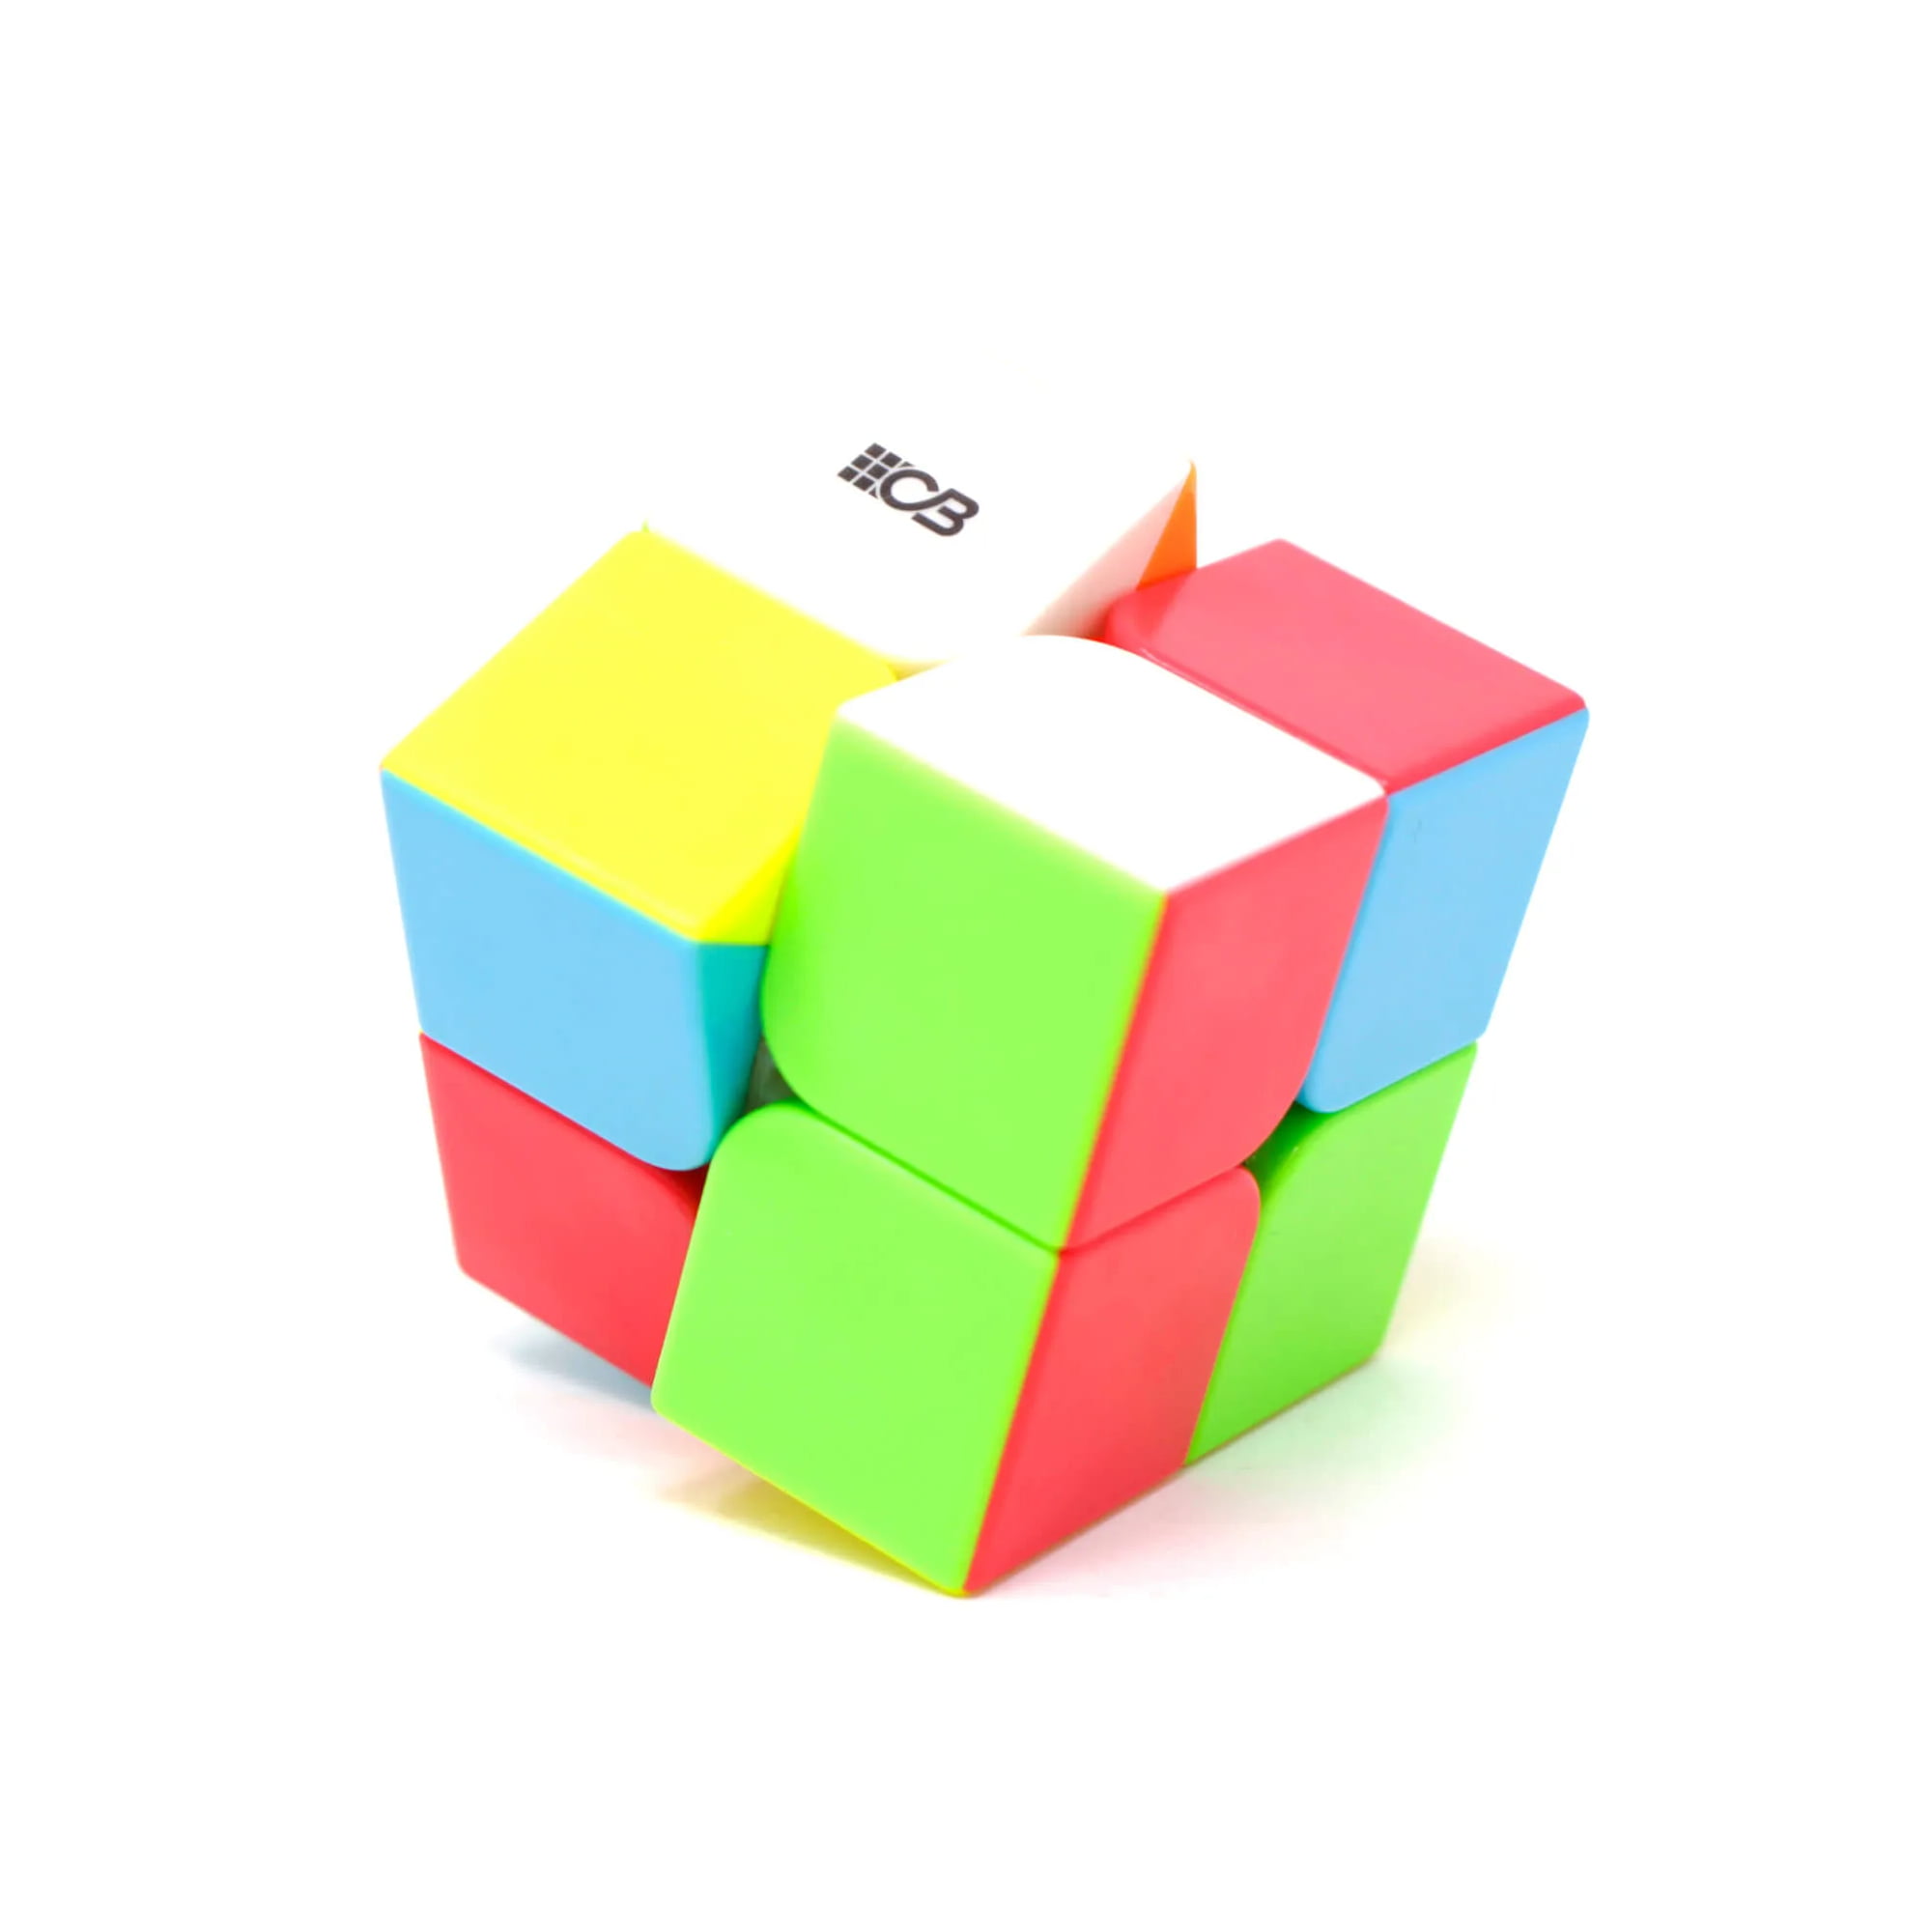 Compre Qiyi 50mm cubo mágico 2x2x2 cubo mágico 2 por 2 cubos